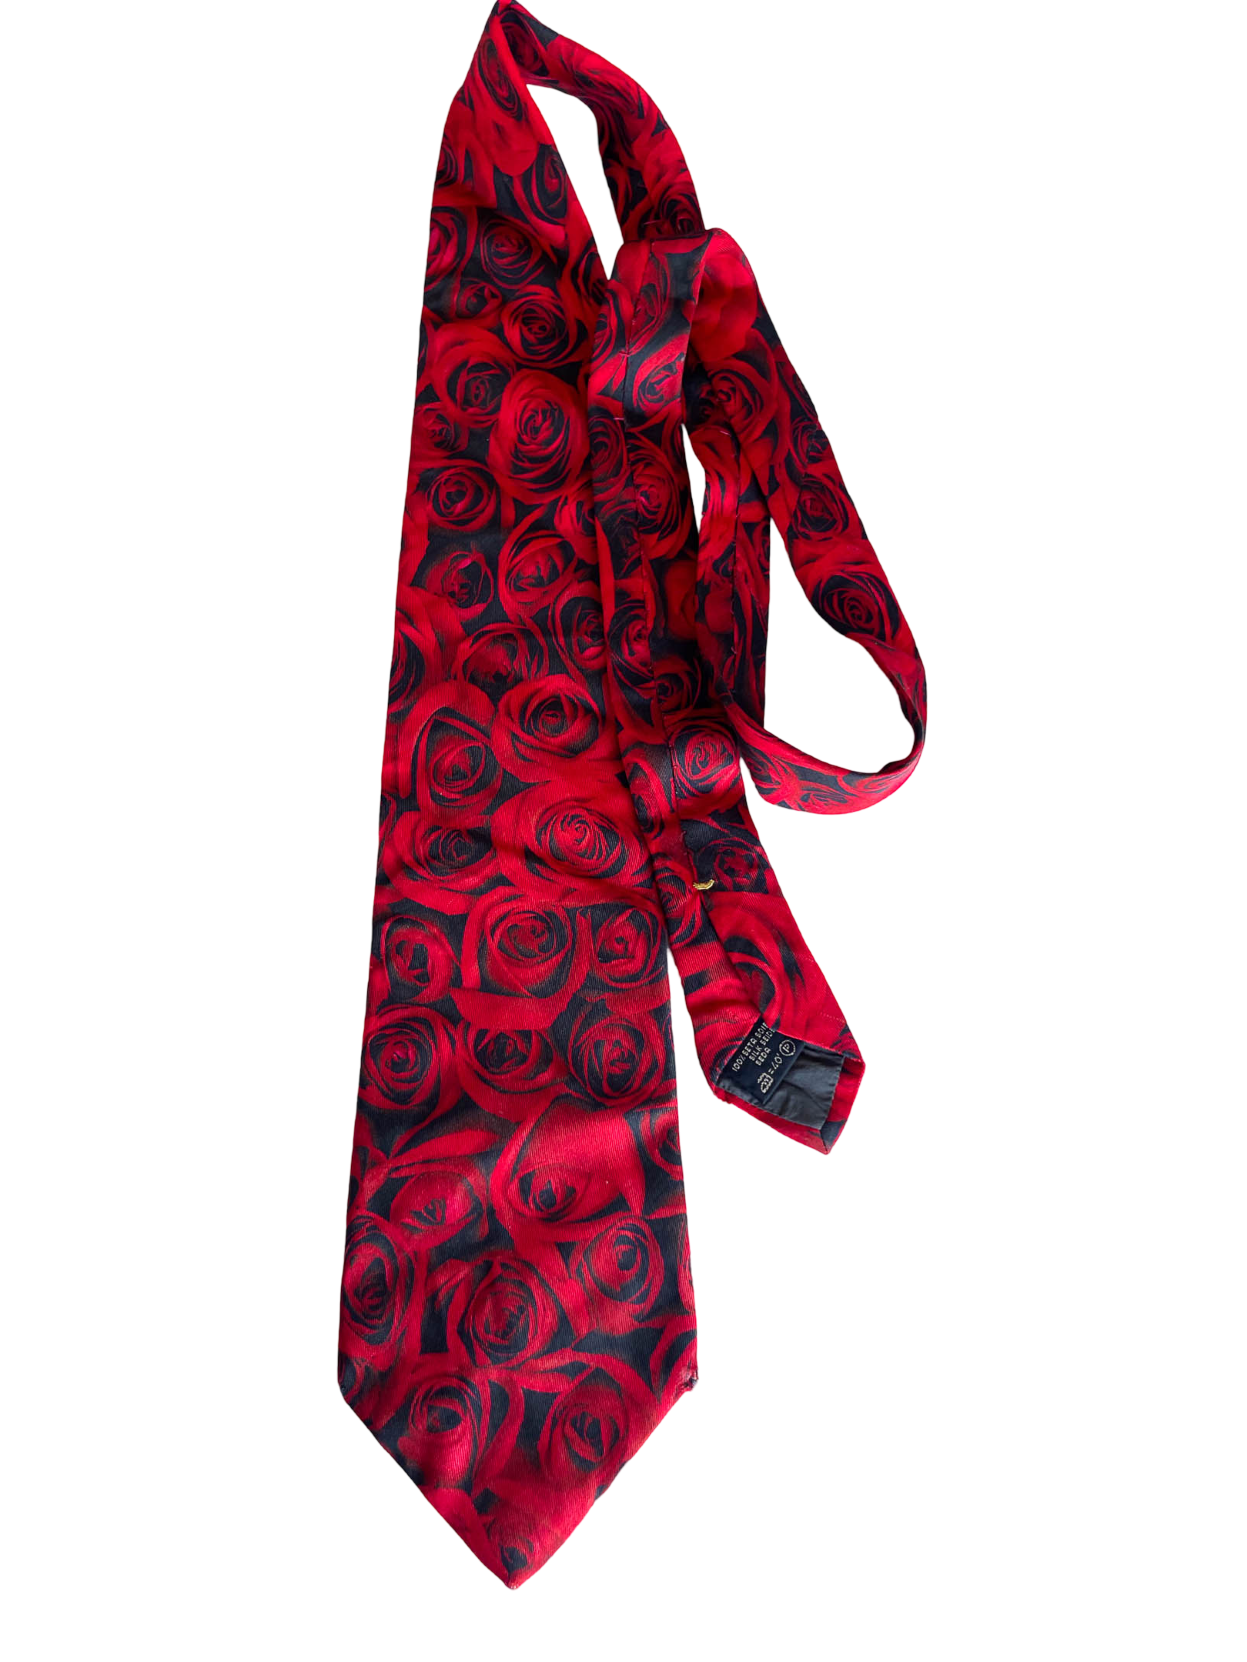 Vintage red rose print Robert Charles men's silk seida tie| SKU 4363